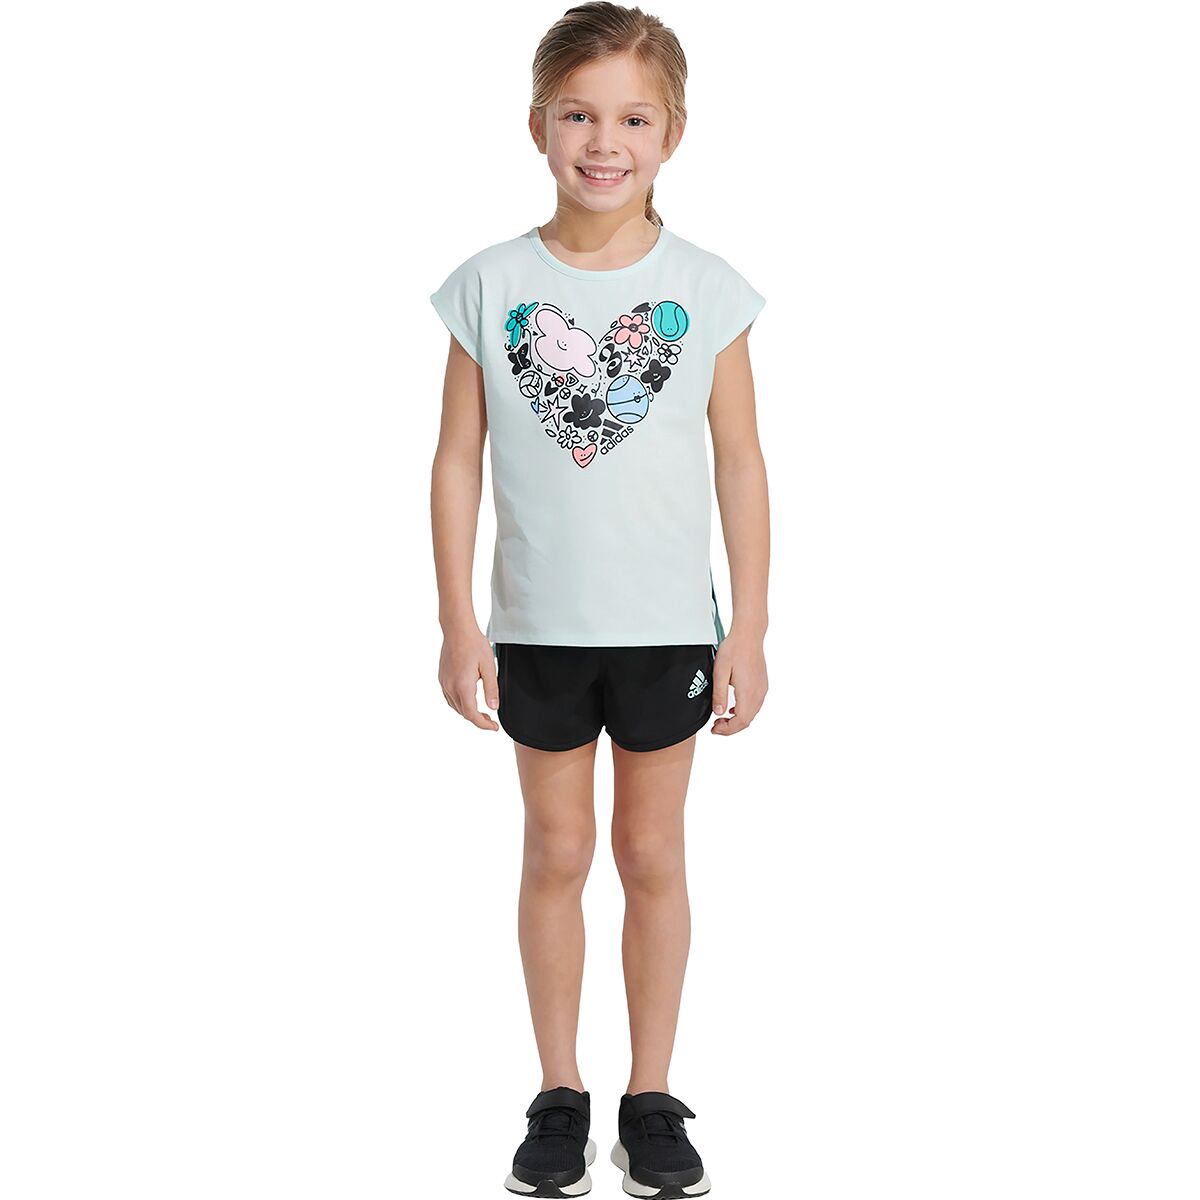 Adidas Graphic T-Shirt Mesh Short Set - Toddler Girls'